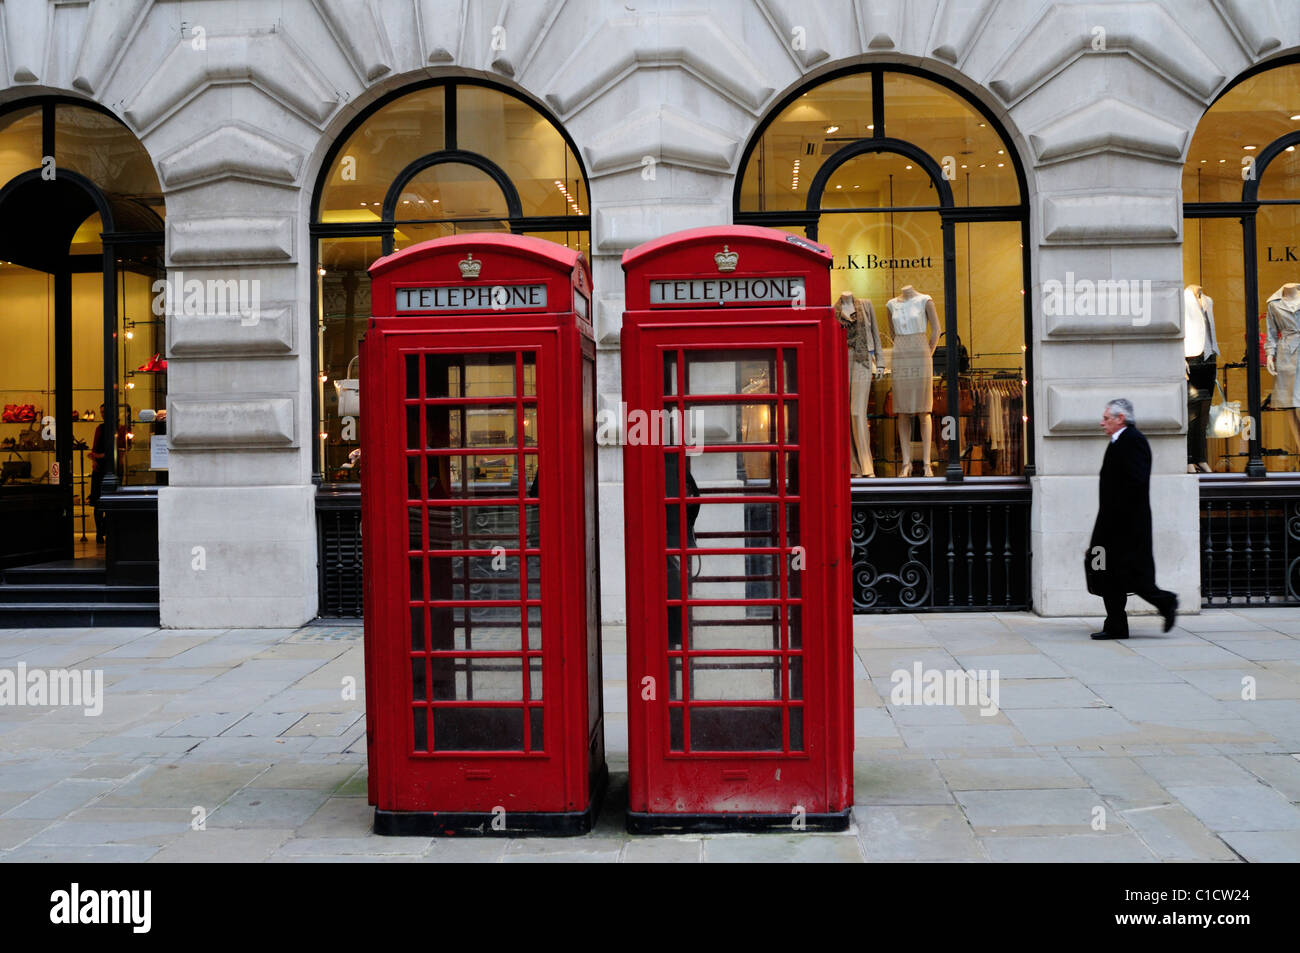 Rote Telefonzellen und l.k. Bennett Bekleidungsgeschäft, Royal Exchange Gebäude, London, England, Vereinigtes Königreich Stockfoto